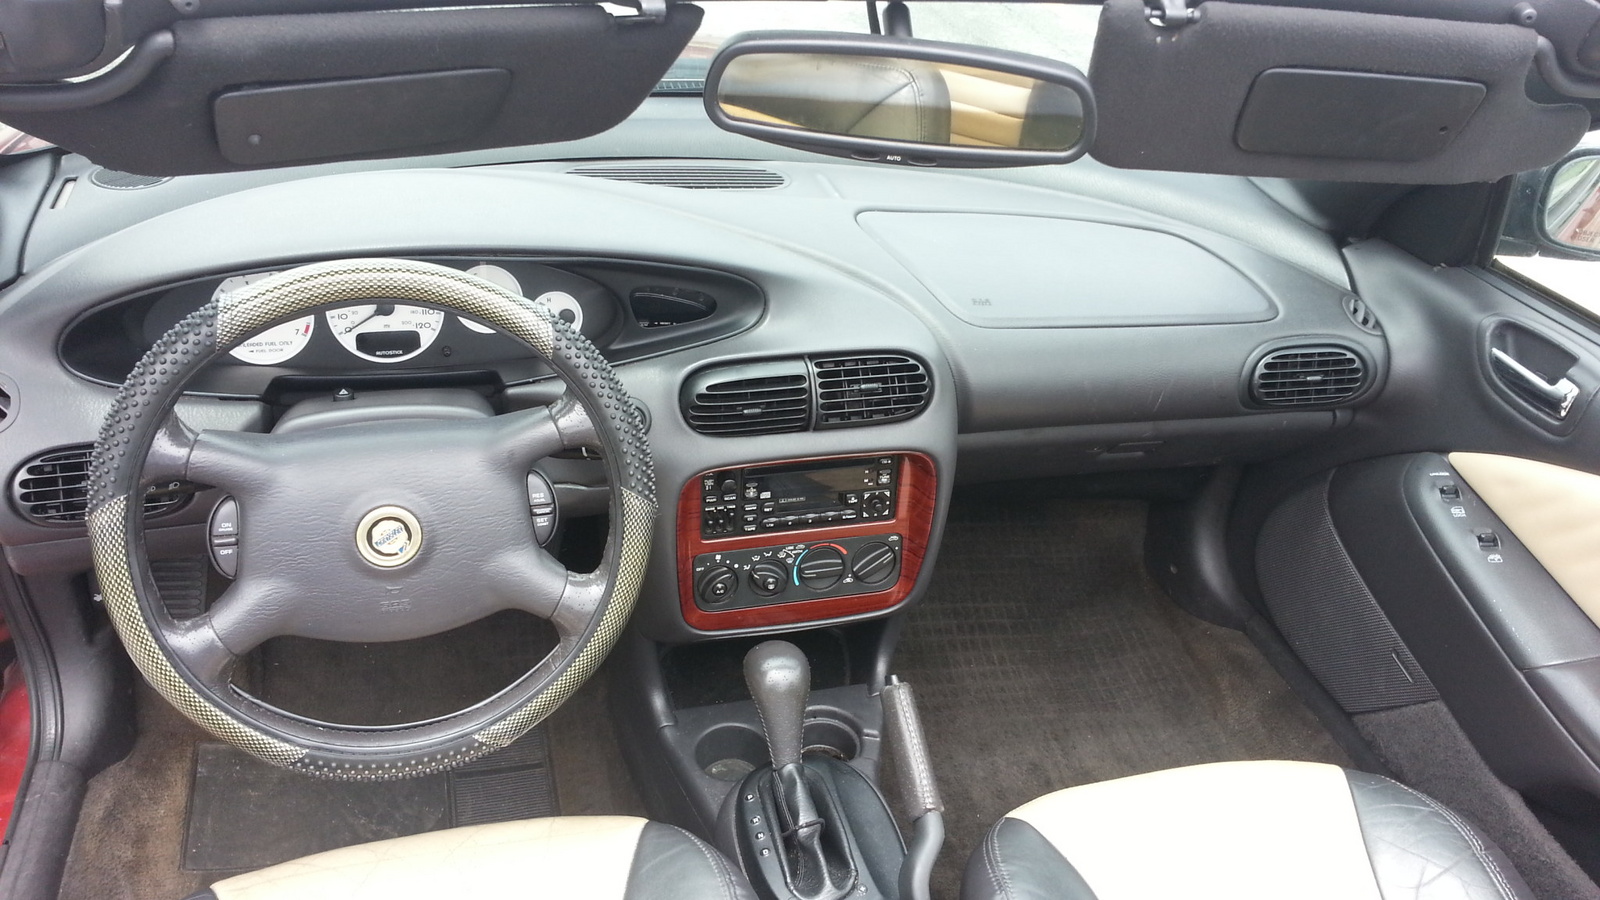 2001 Chrysler sebring limited specs #5